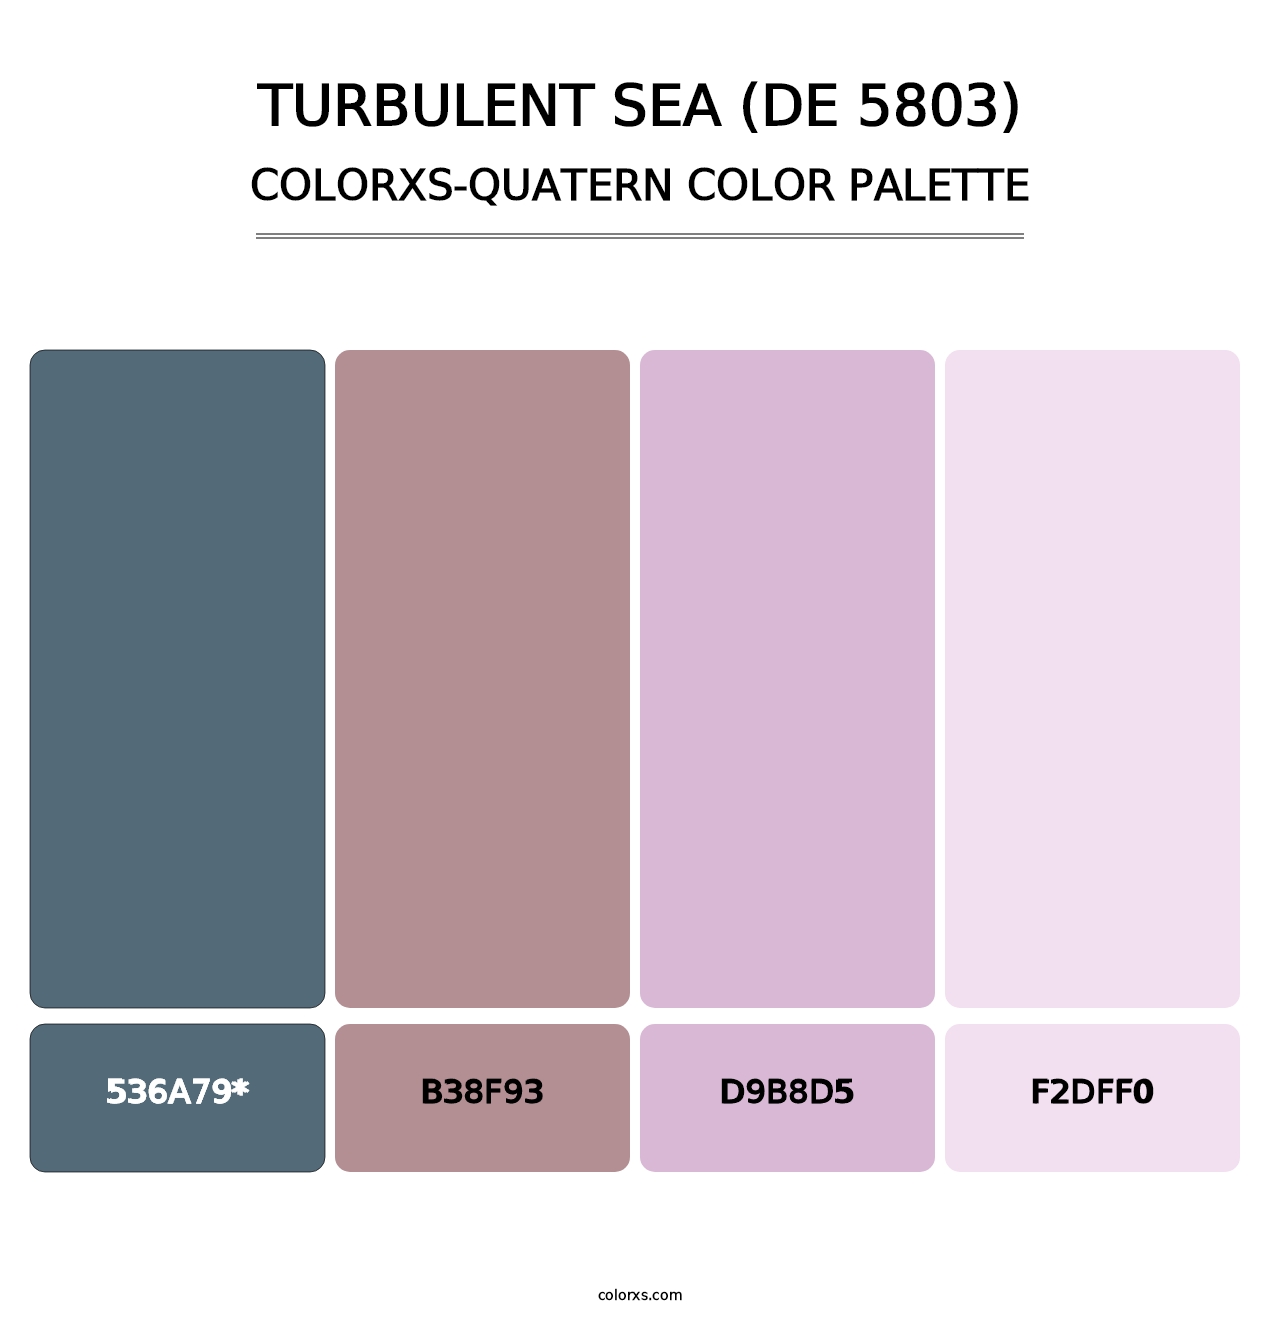 Turbulent Sea (DE 5803) - Colorxs Quatern Palette